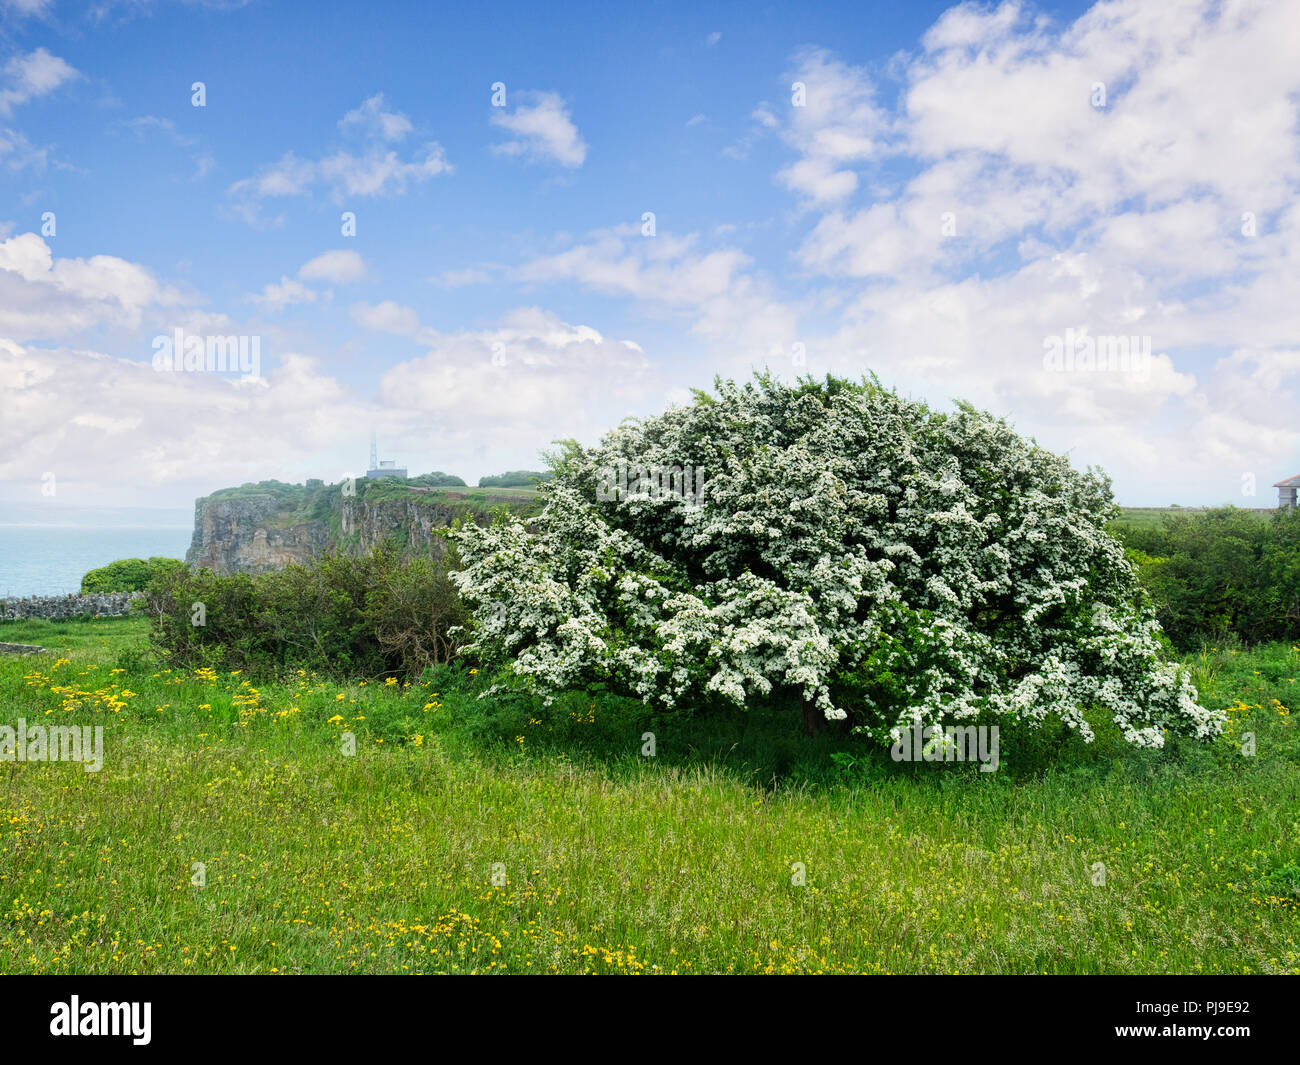 Aubépine en pleine floraison sur Berry Head, Devon, UK. Crataegus monogyna. Parfois appelé peut s'épanouir, parce qu'il fleurit en mai. Banque D'Images